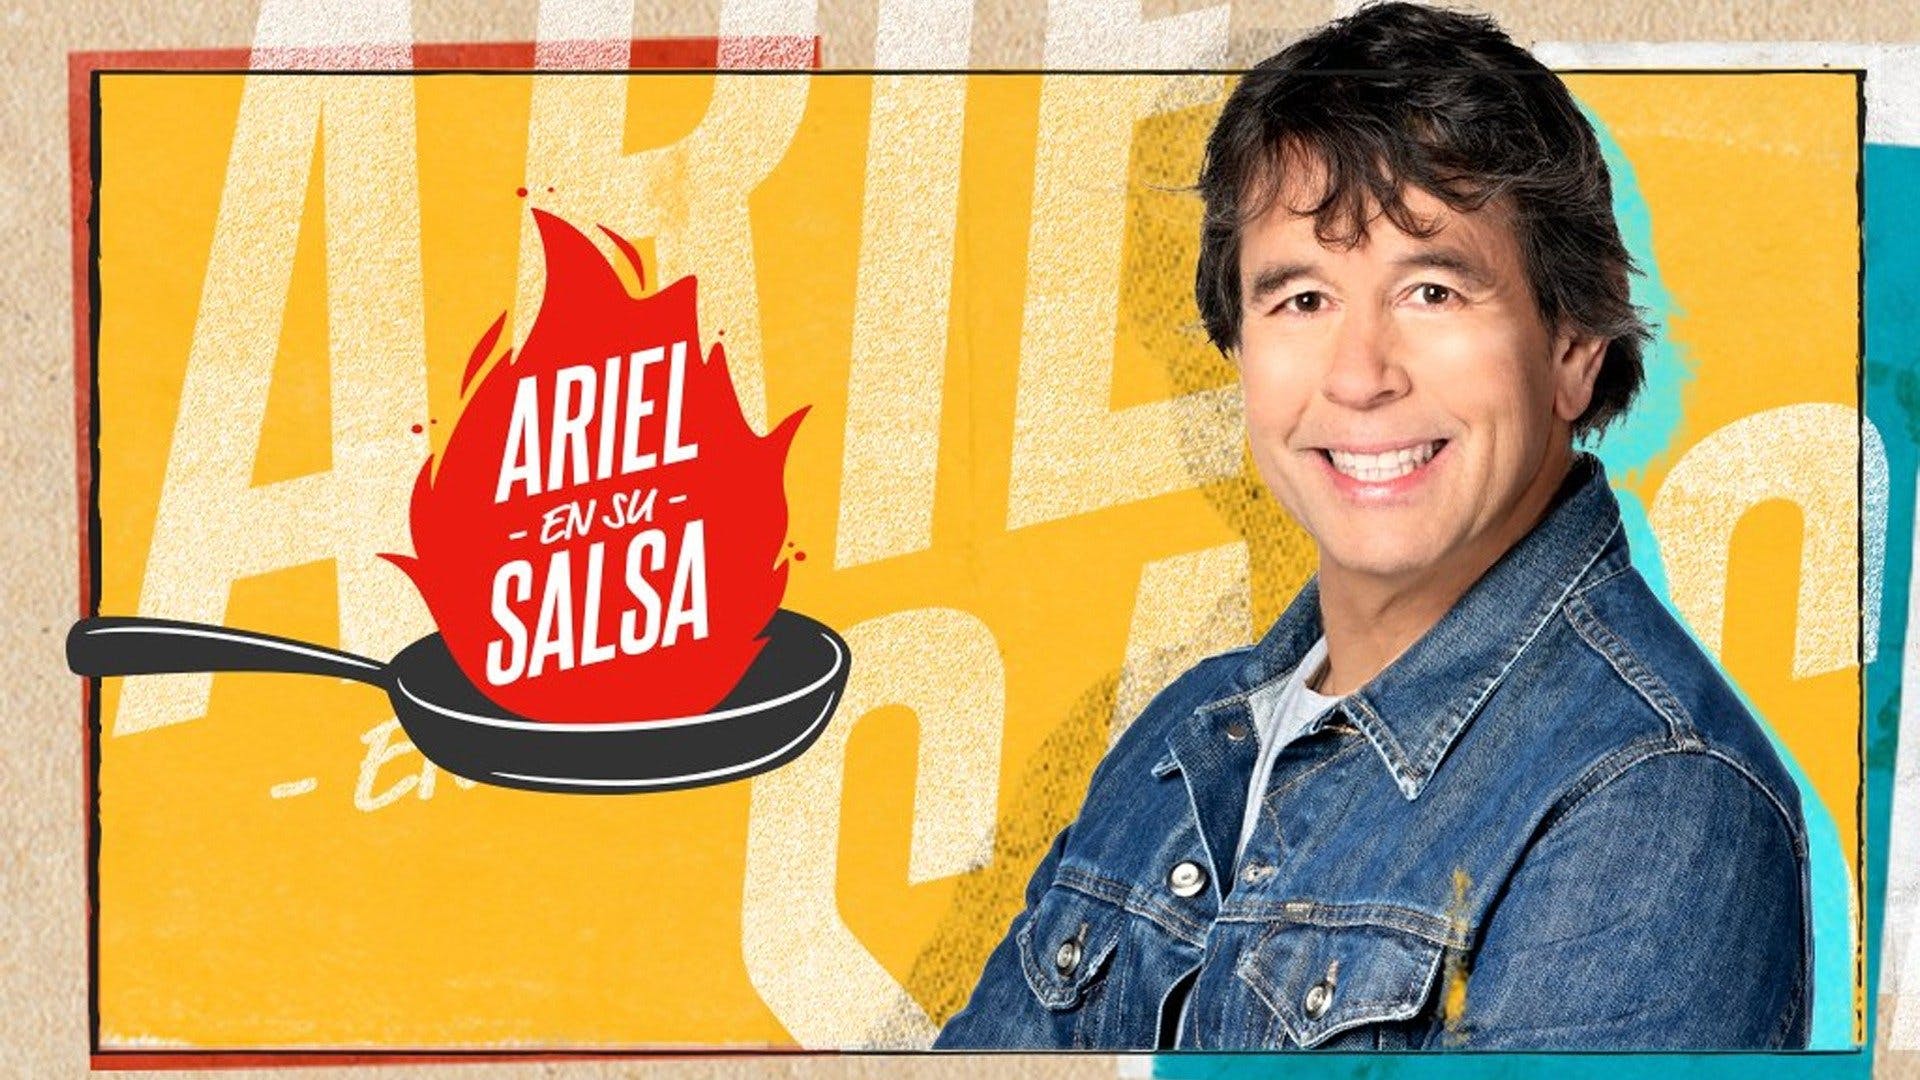 Ariel en su salsa Canal 9 Televida suma un nuevo programa Canal 9